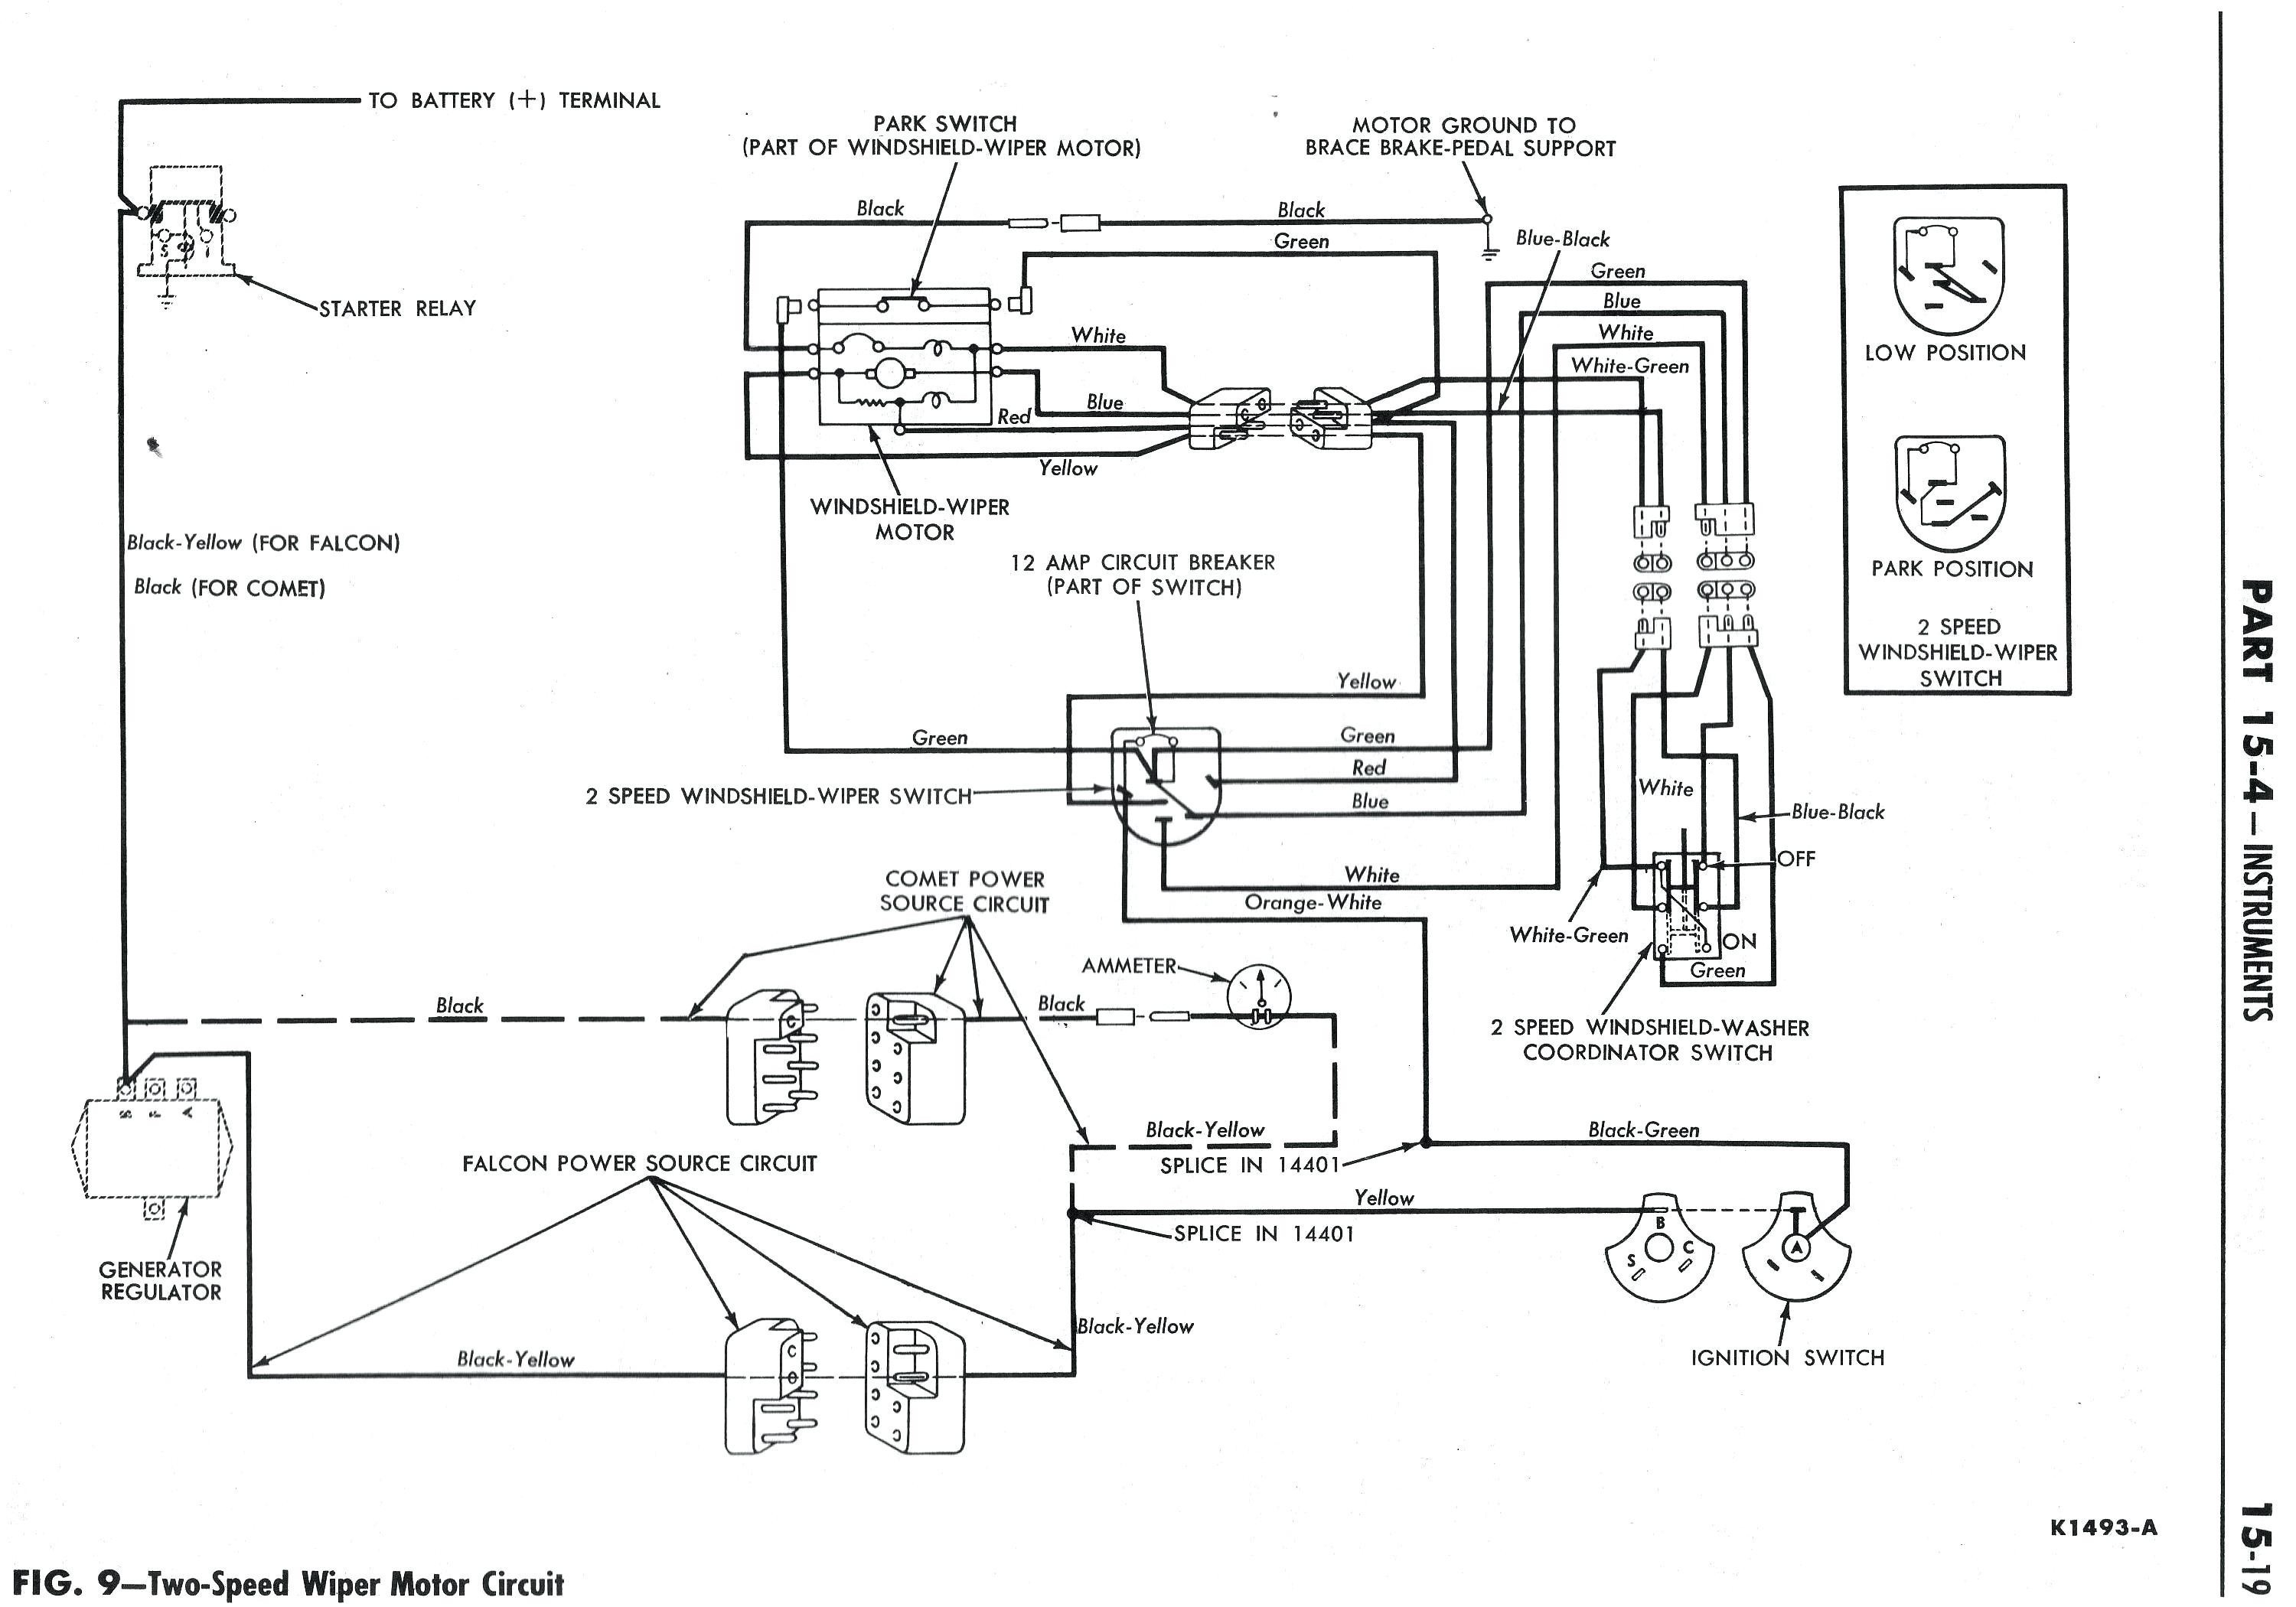 Kenwood Kdc 108 Wiring Diagram Free Picture | Wiring Diagram - Kenwood Kdc 108 Wiring Diagram